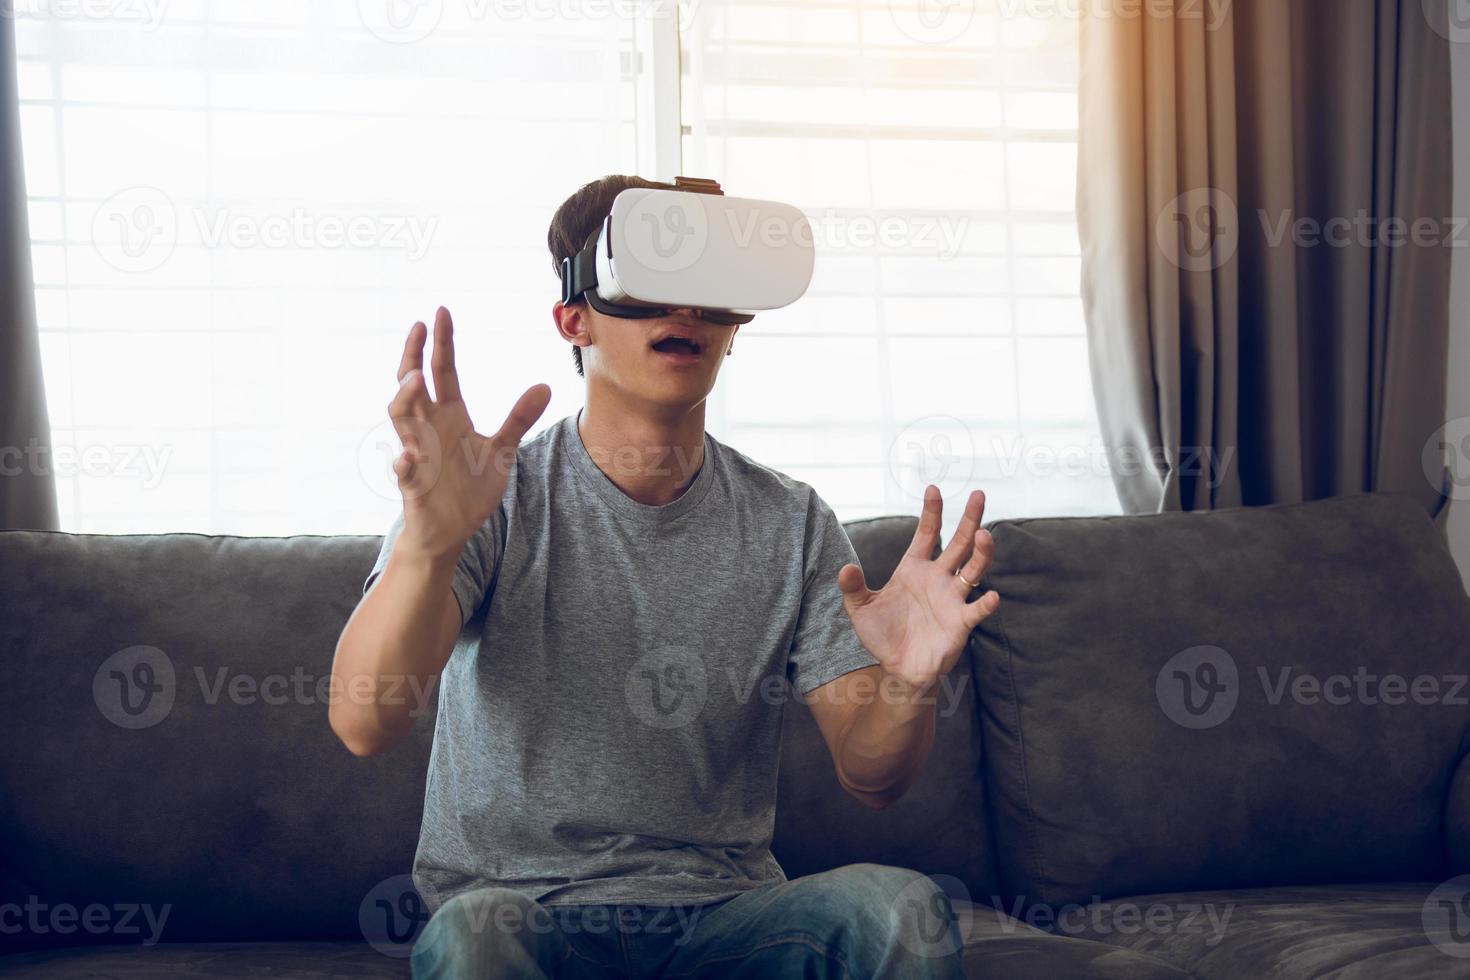 junger asiatischer mann, der im wohnzimmer eine virtual-reality-brille trägt, um die virtuelle realität zu bewundern. foto